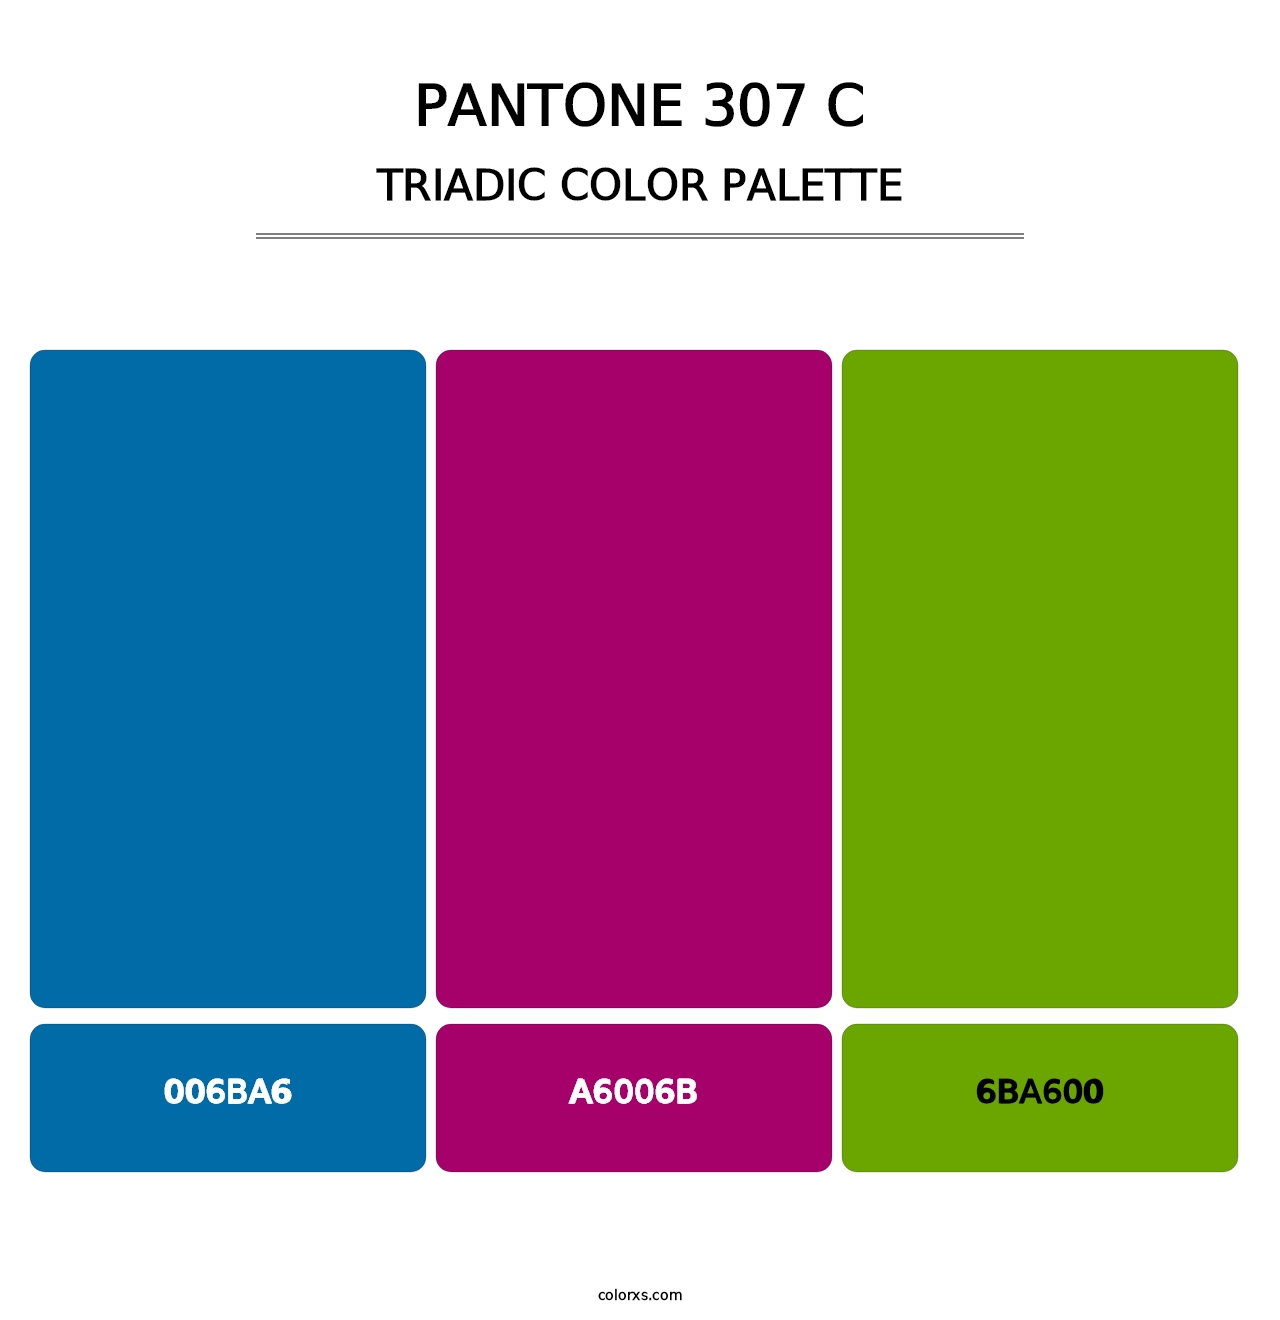 PANTONE 307 C - Triadic Color Palette